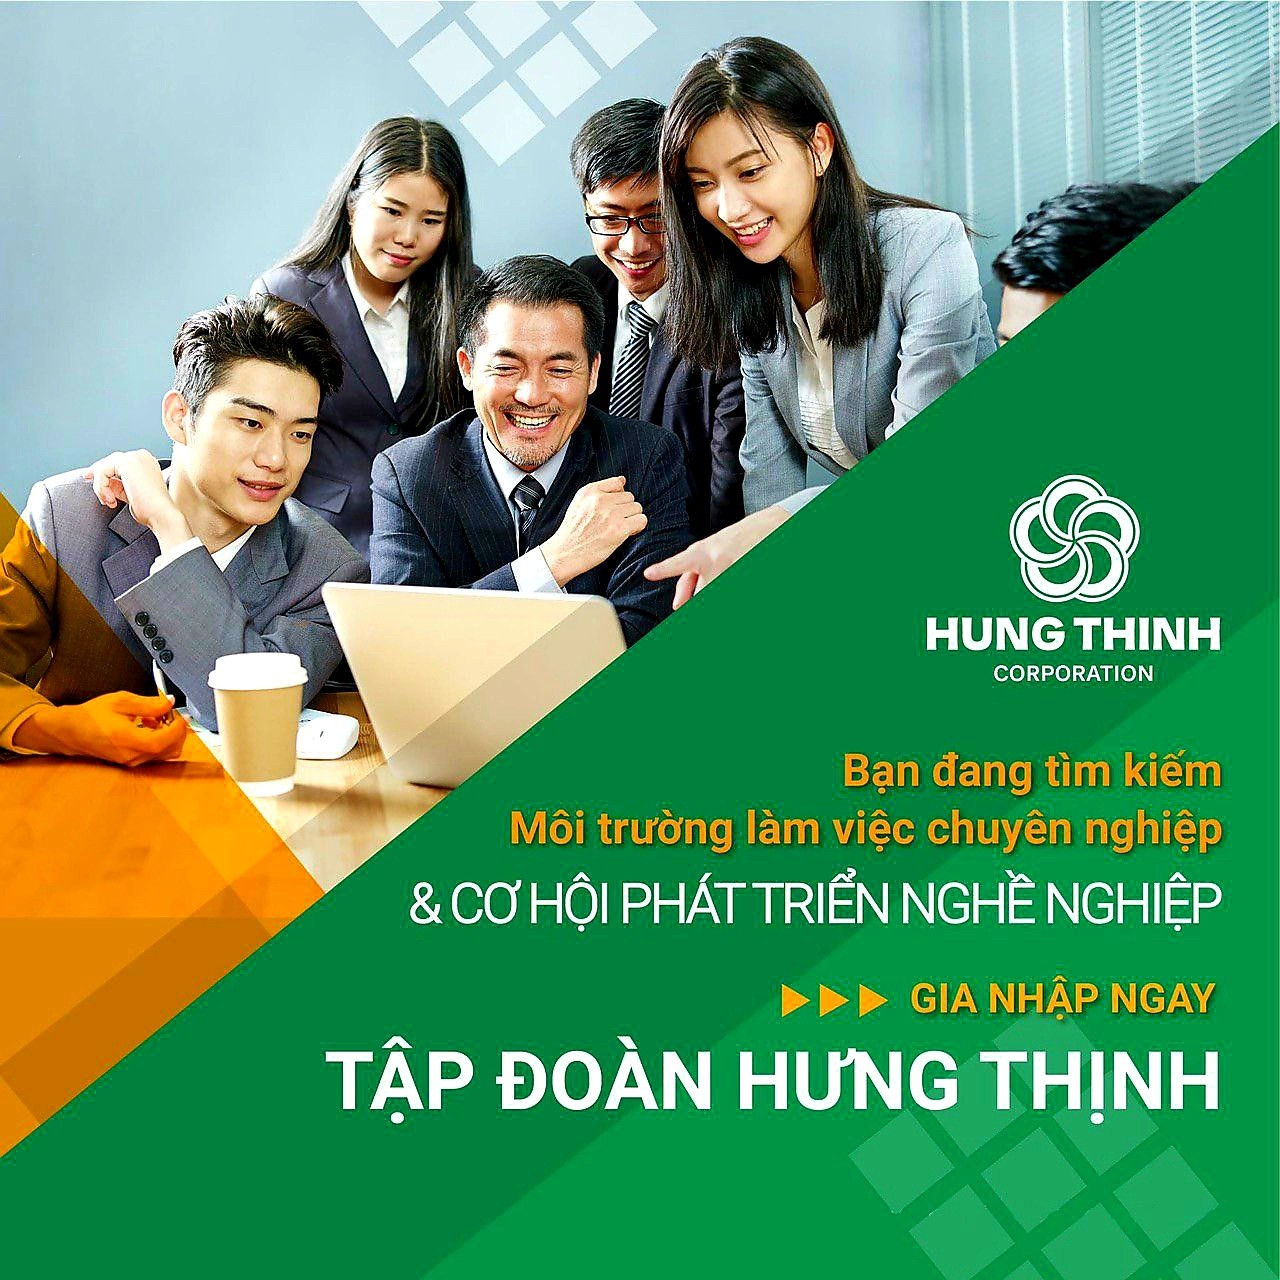 Tuyển dụng nhân viên kinh doanh bất động sản làm việc tại Quy Nhơn, Bình Định năm 2021